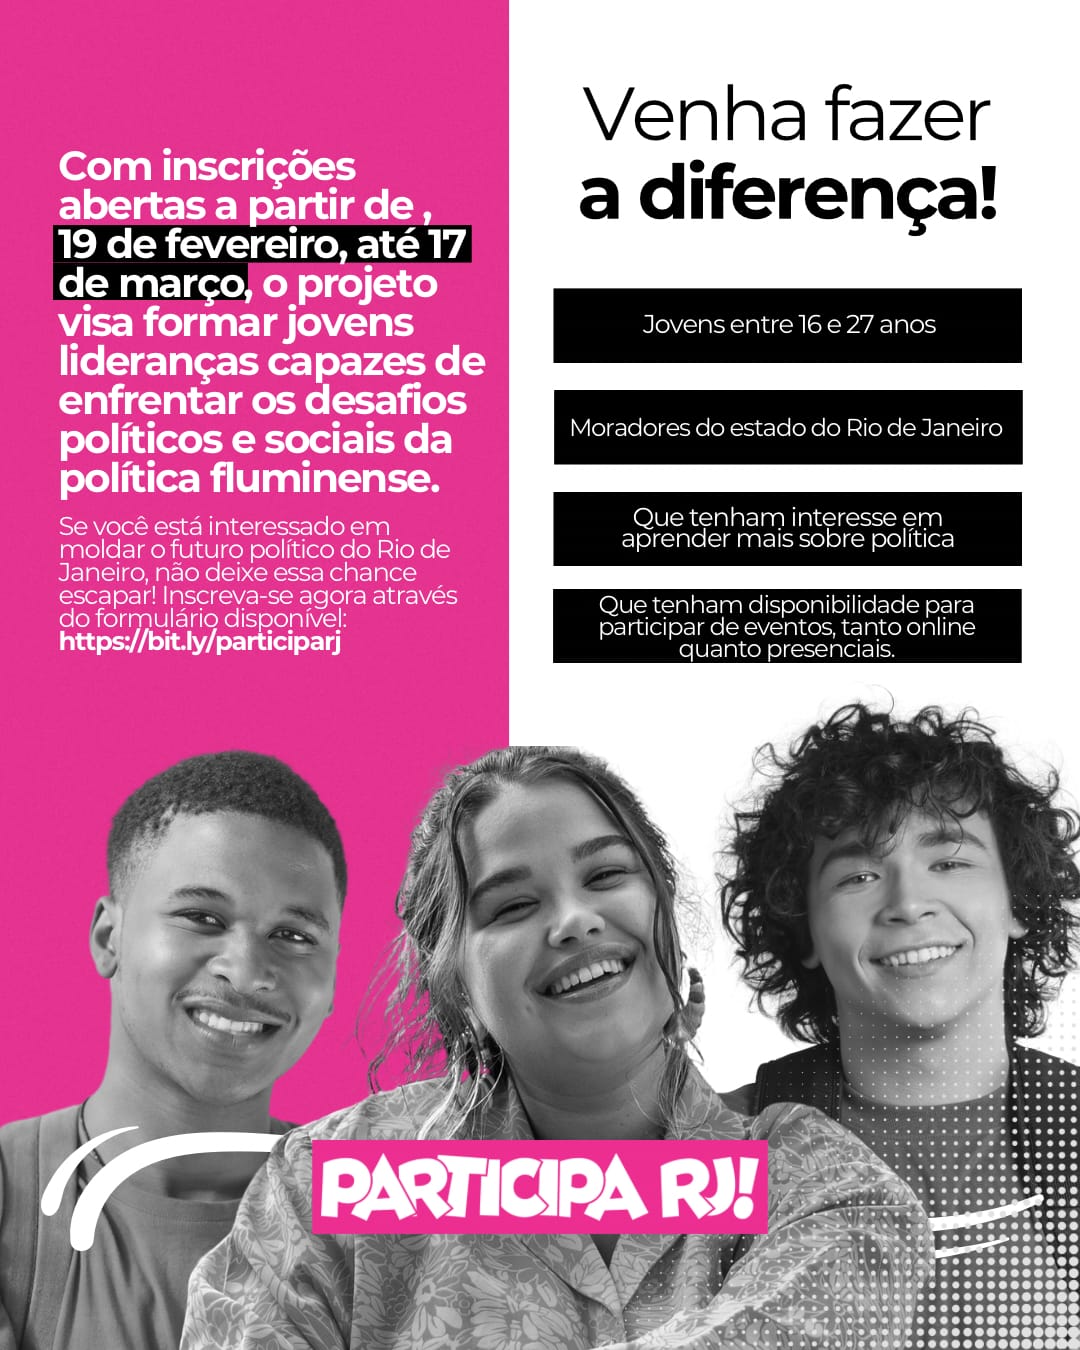 Deputado fomenta programa de participação política para jovens no Rio (Foto: Divulgação)